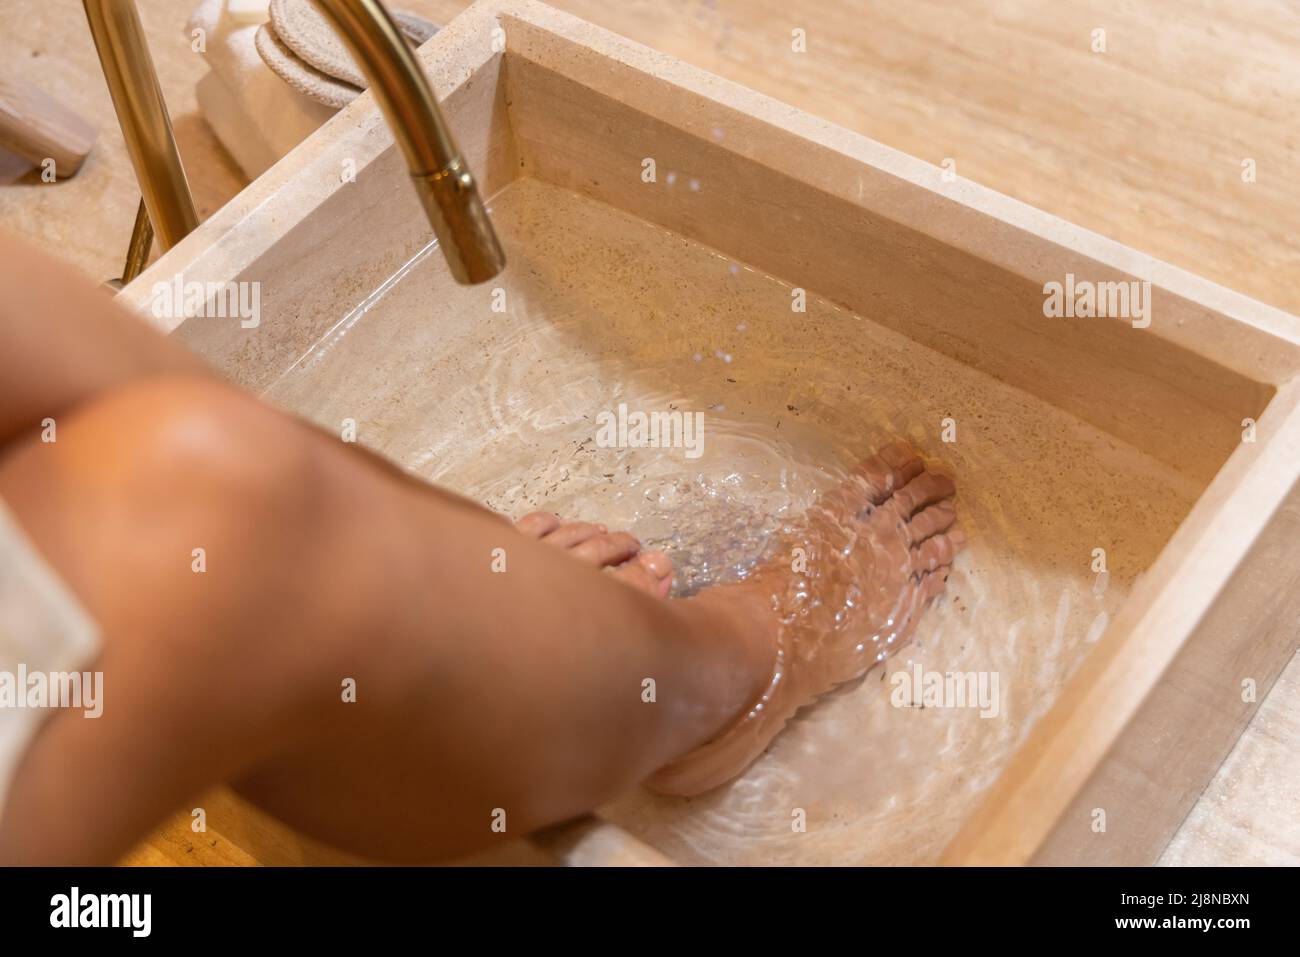 Mädchen, das sich auf die Pediküre vorbereitet und ihre Füße in Wasser einweicht. Stockfoto